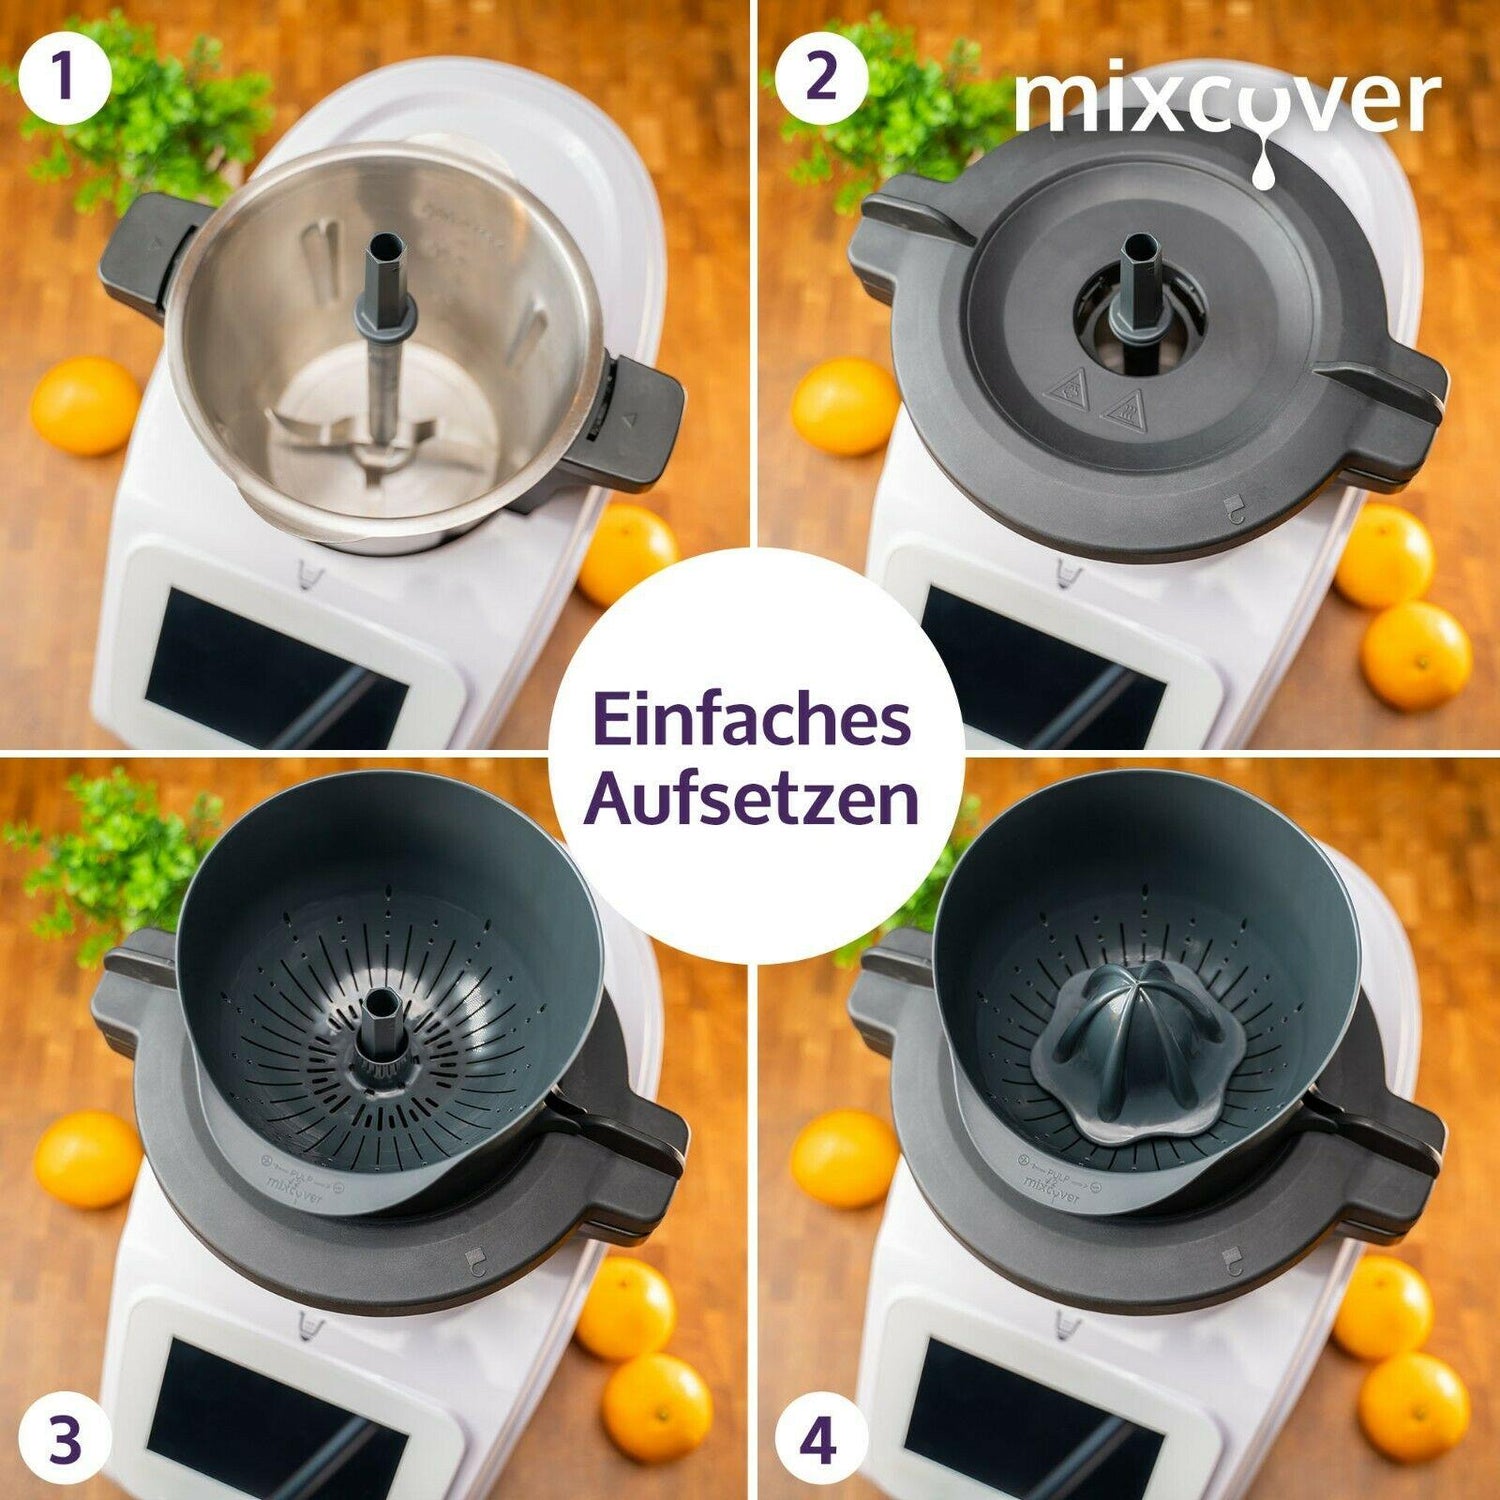 mixcover Juice Press / Citrus Press pour Monsieur Cuisine Connect Agracer